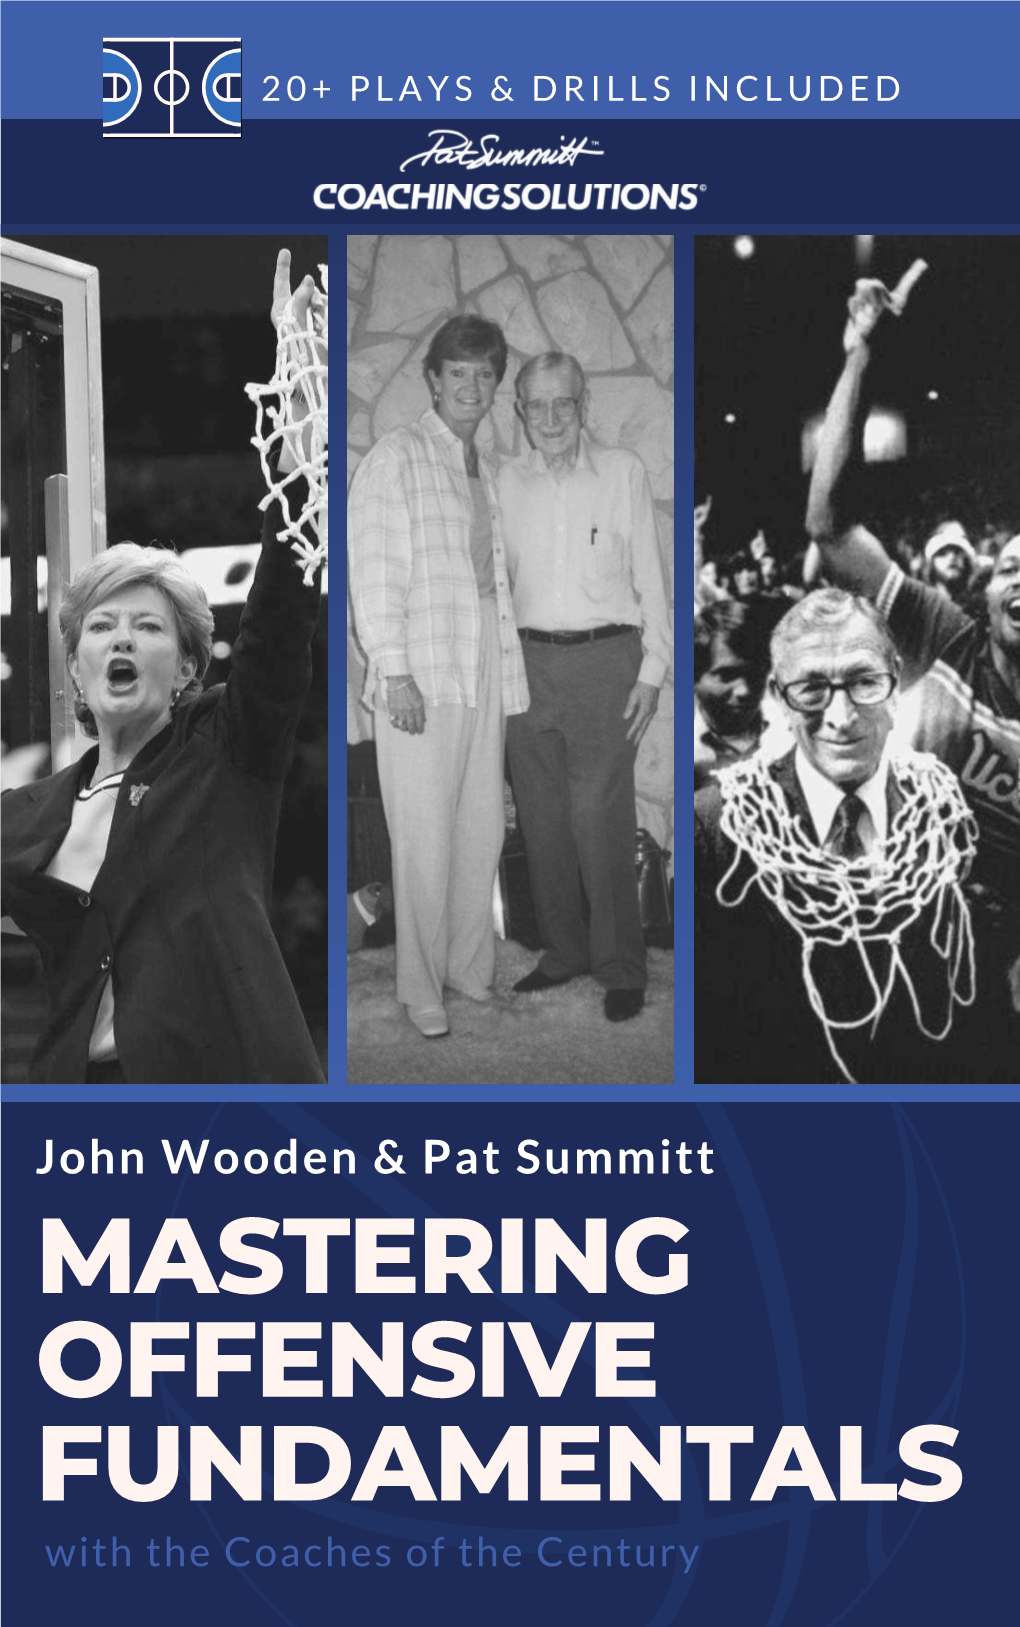 John Wooden & Pat Summitt